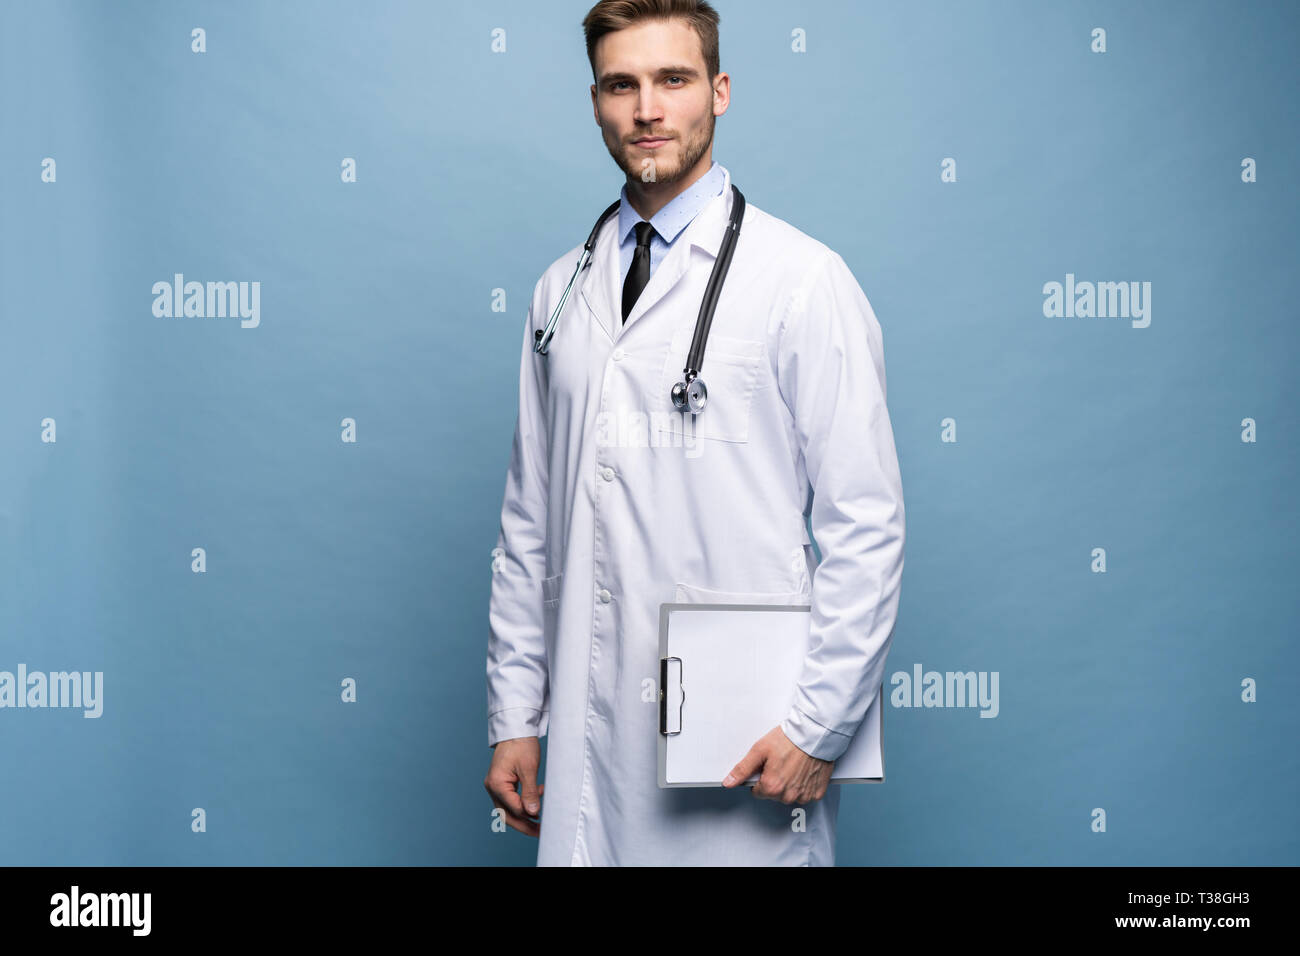 Portrait of jeune médecin sur fond bleu. Banque D'Images